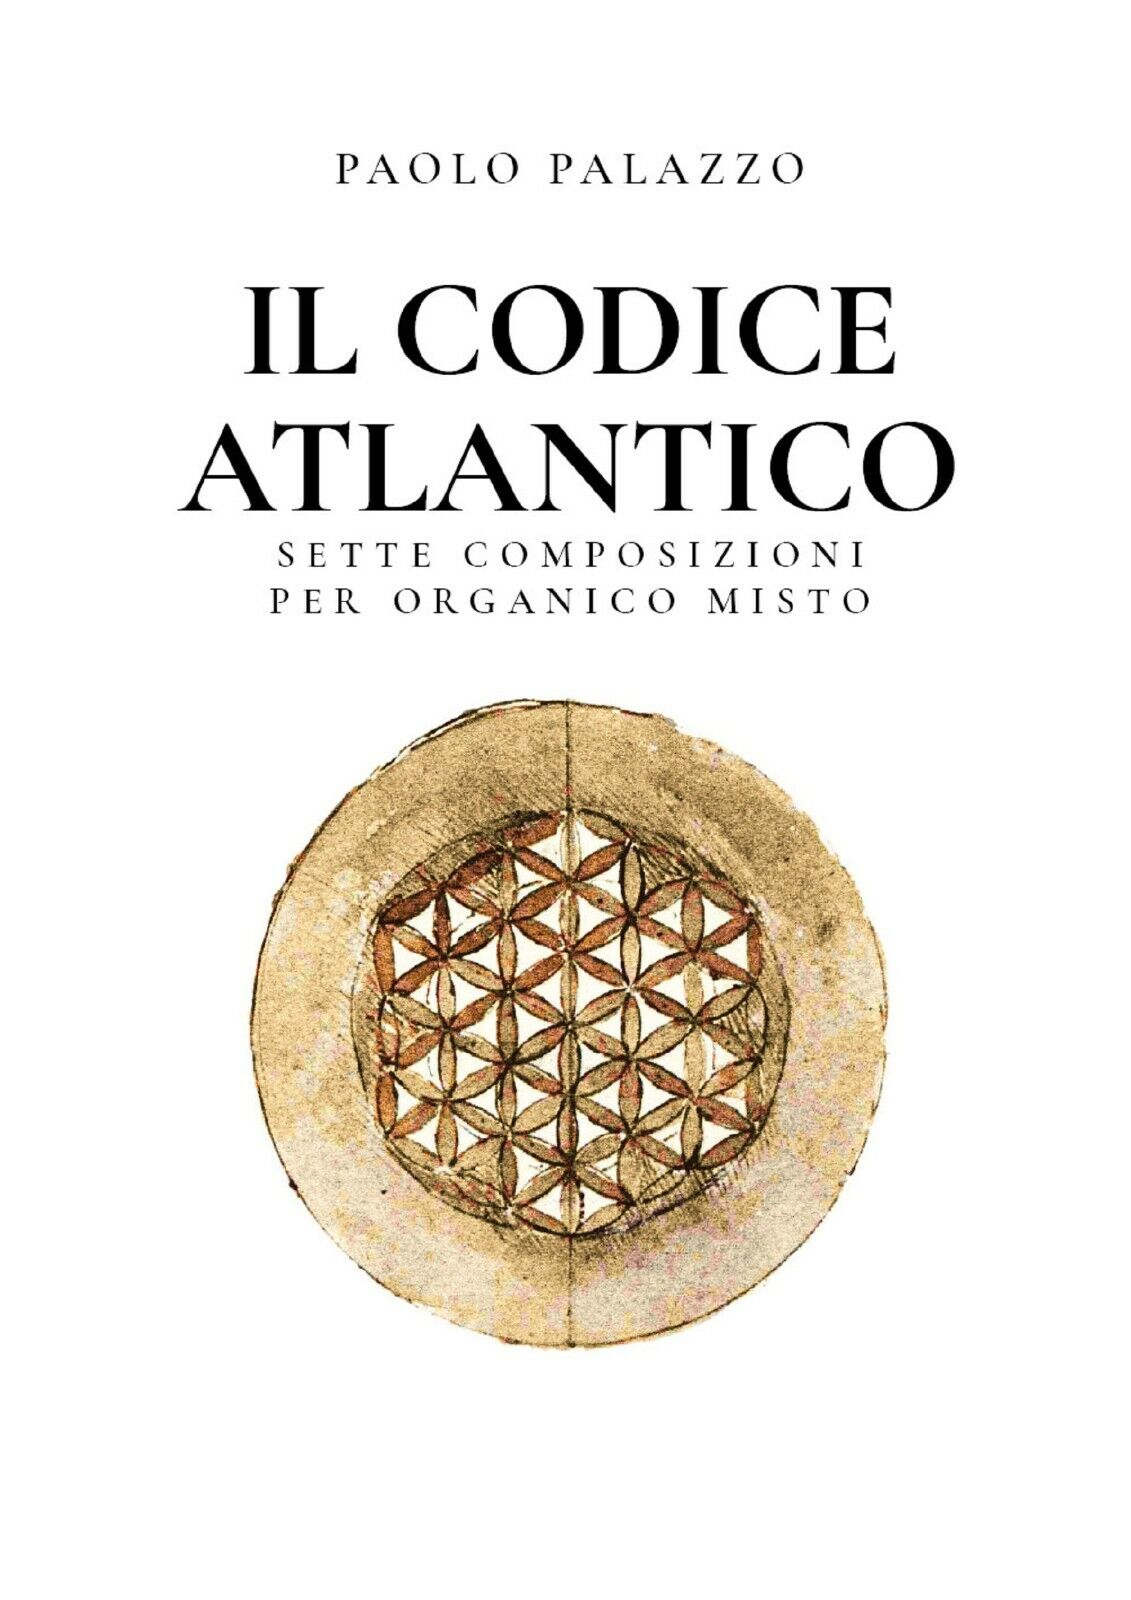 Il Codice Atlantico - Sette composizioni per organico misto di Paolo Palazzo,  2